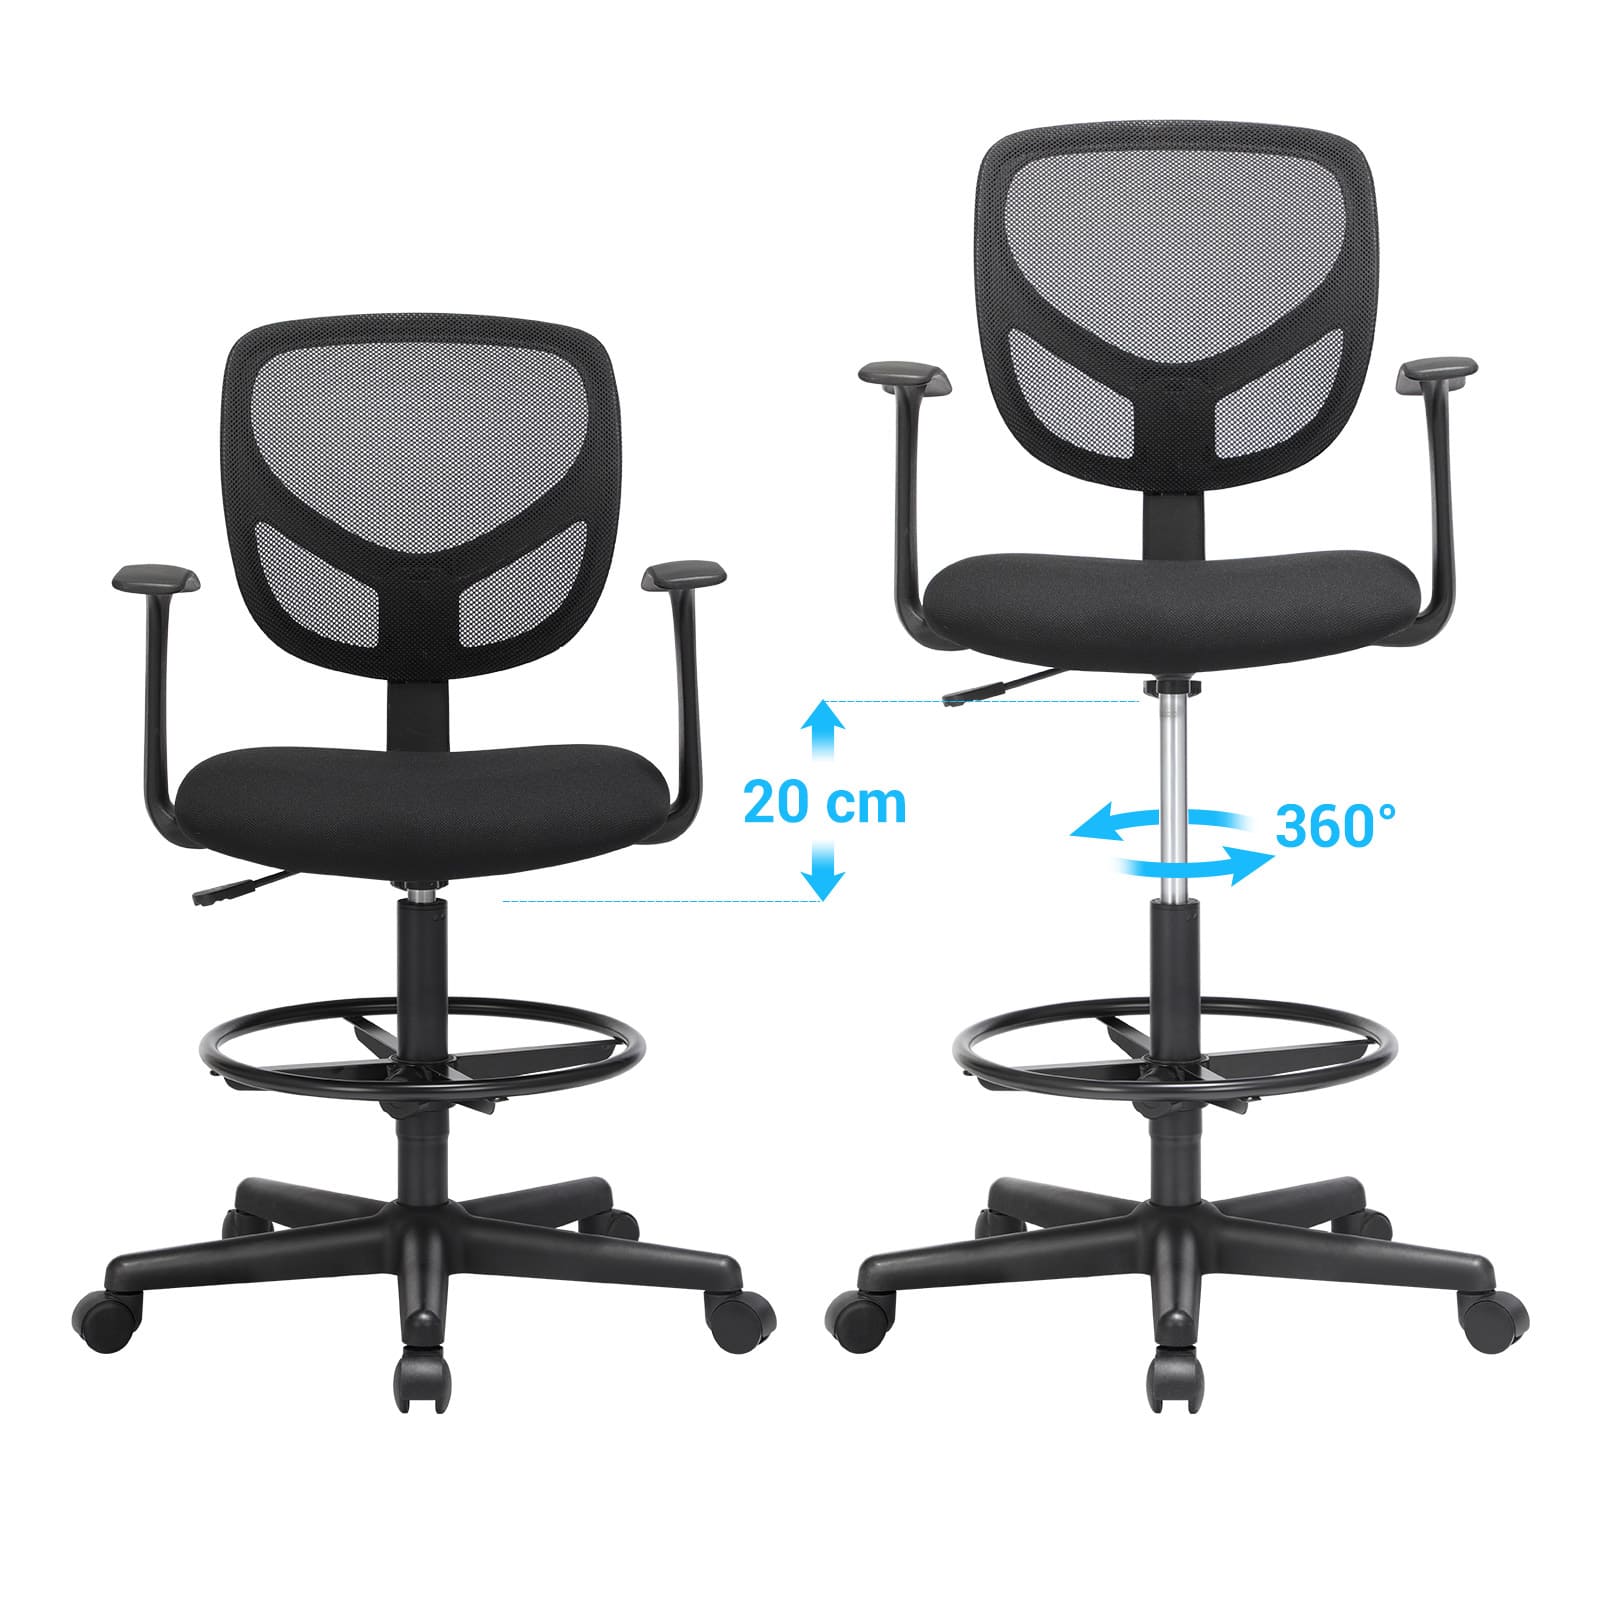 Chaise ergonomique, réglable en hauteur, repose-pieds, chaise de bureau pivote à 360 degrés, SONGMICS